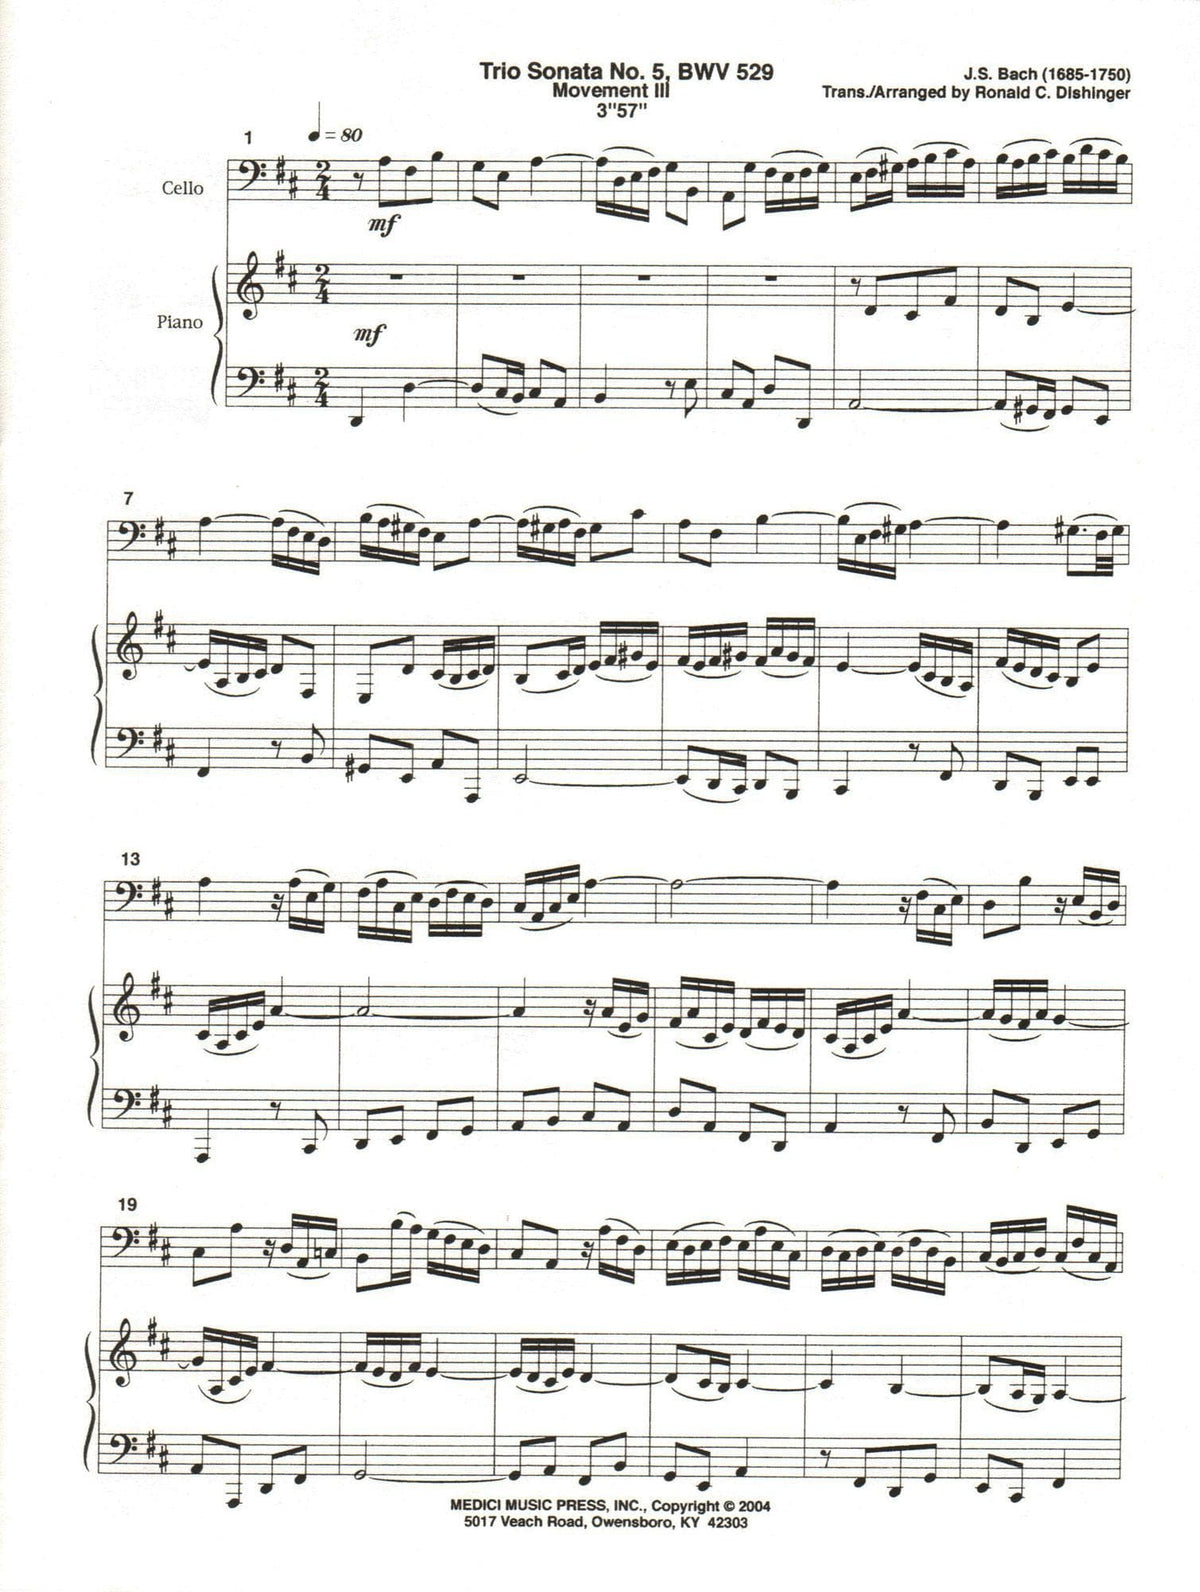 Bach, J.S. - Trio Sonata No. 5 Movement III, from Six Trio Sonatas, BWV 529 - for Cello and Piano - arr. by Dishinger - Medici Music Press